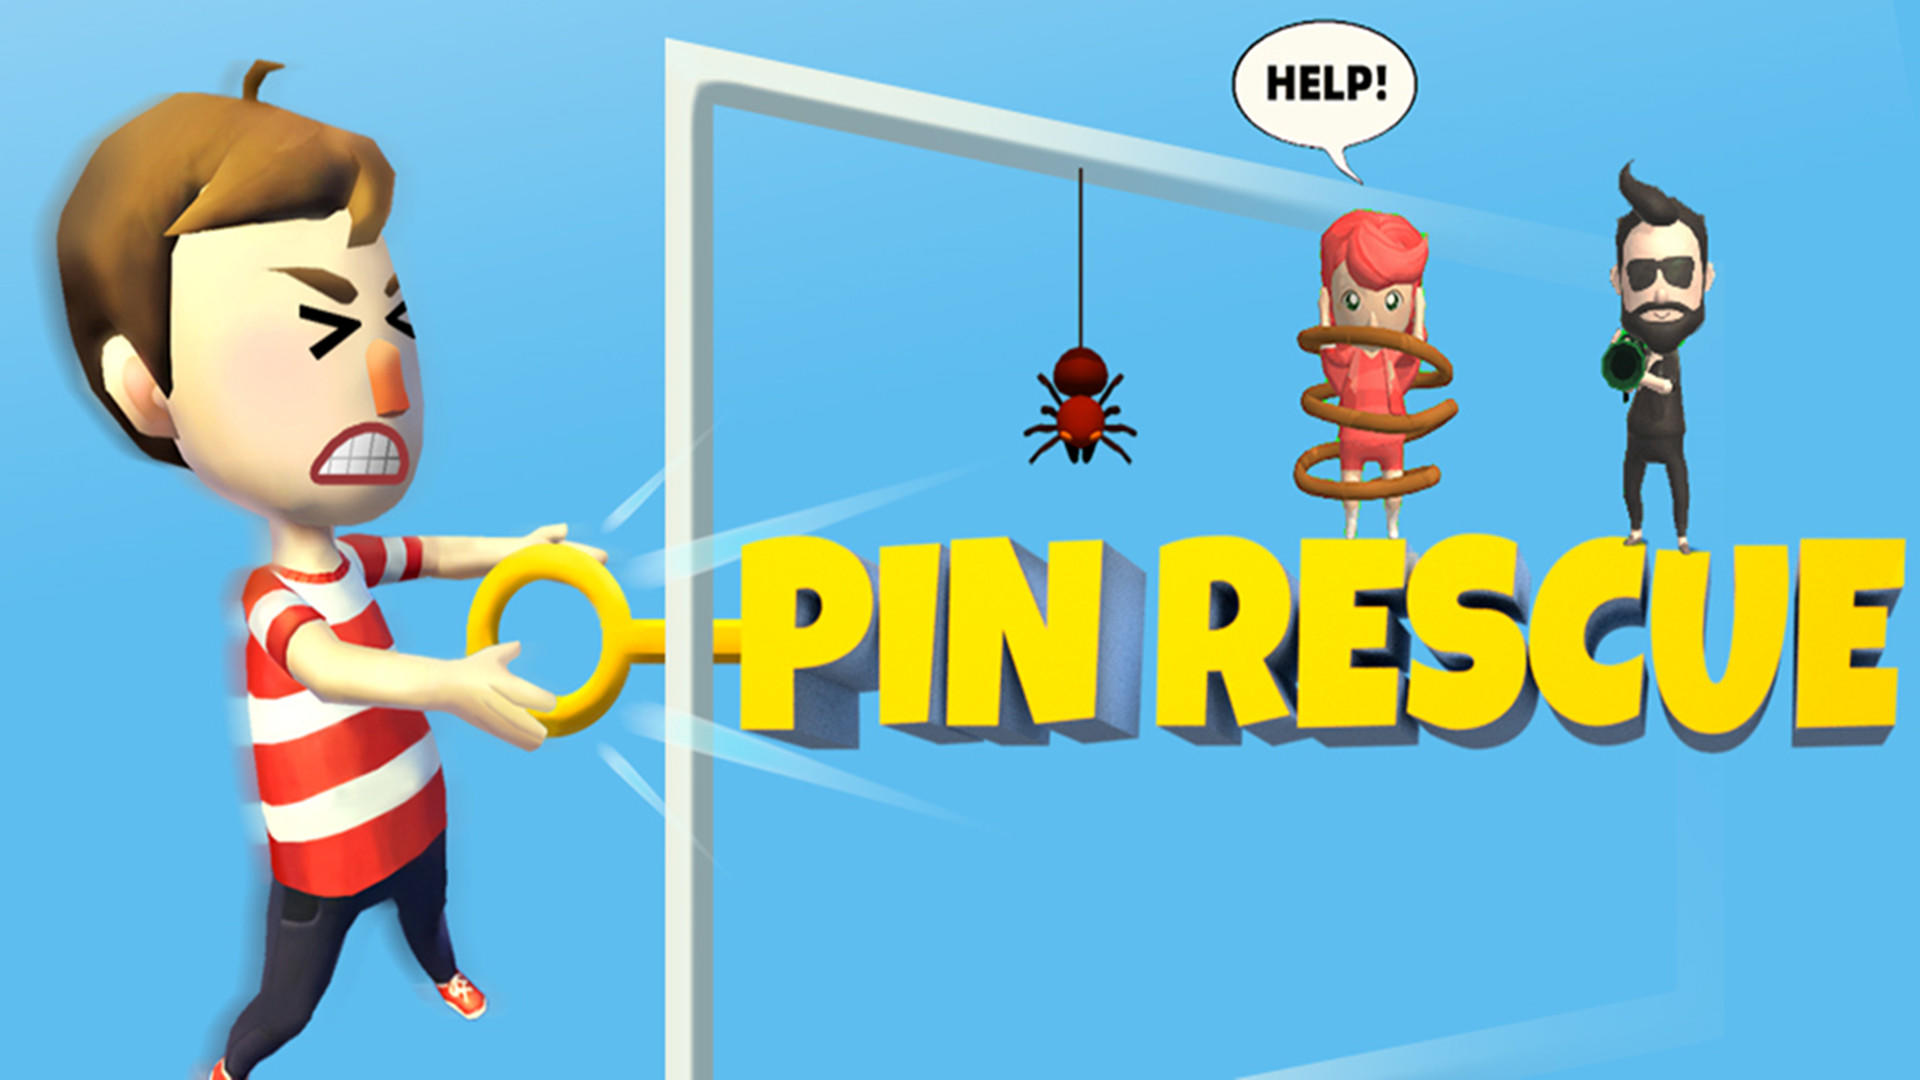 抽个棍棍（中文版）—Pin Rescue游戏截图